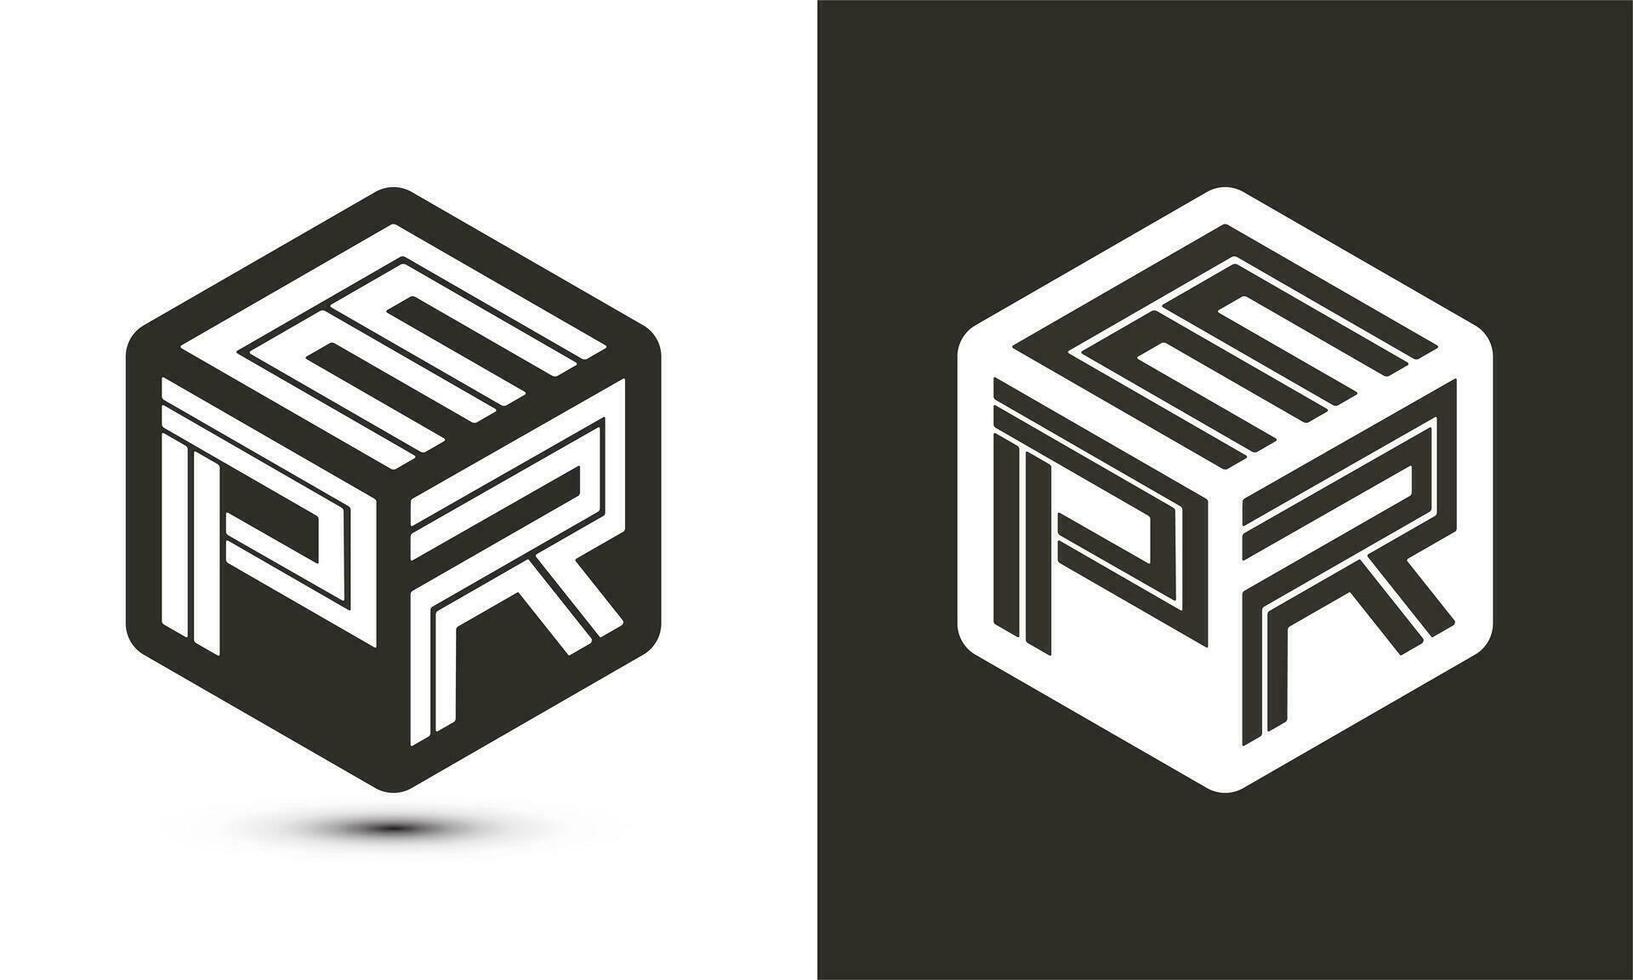 epr brief logo ontwerp met illustrator kubus logo, vector logo modern alfabet doopvont overlappen stijl.